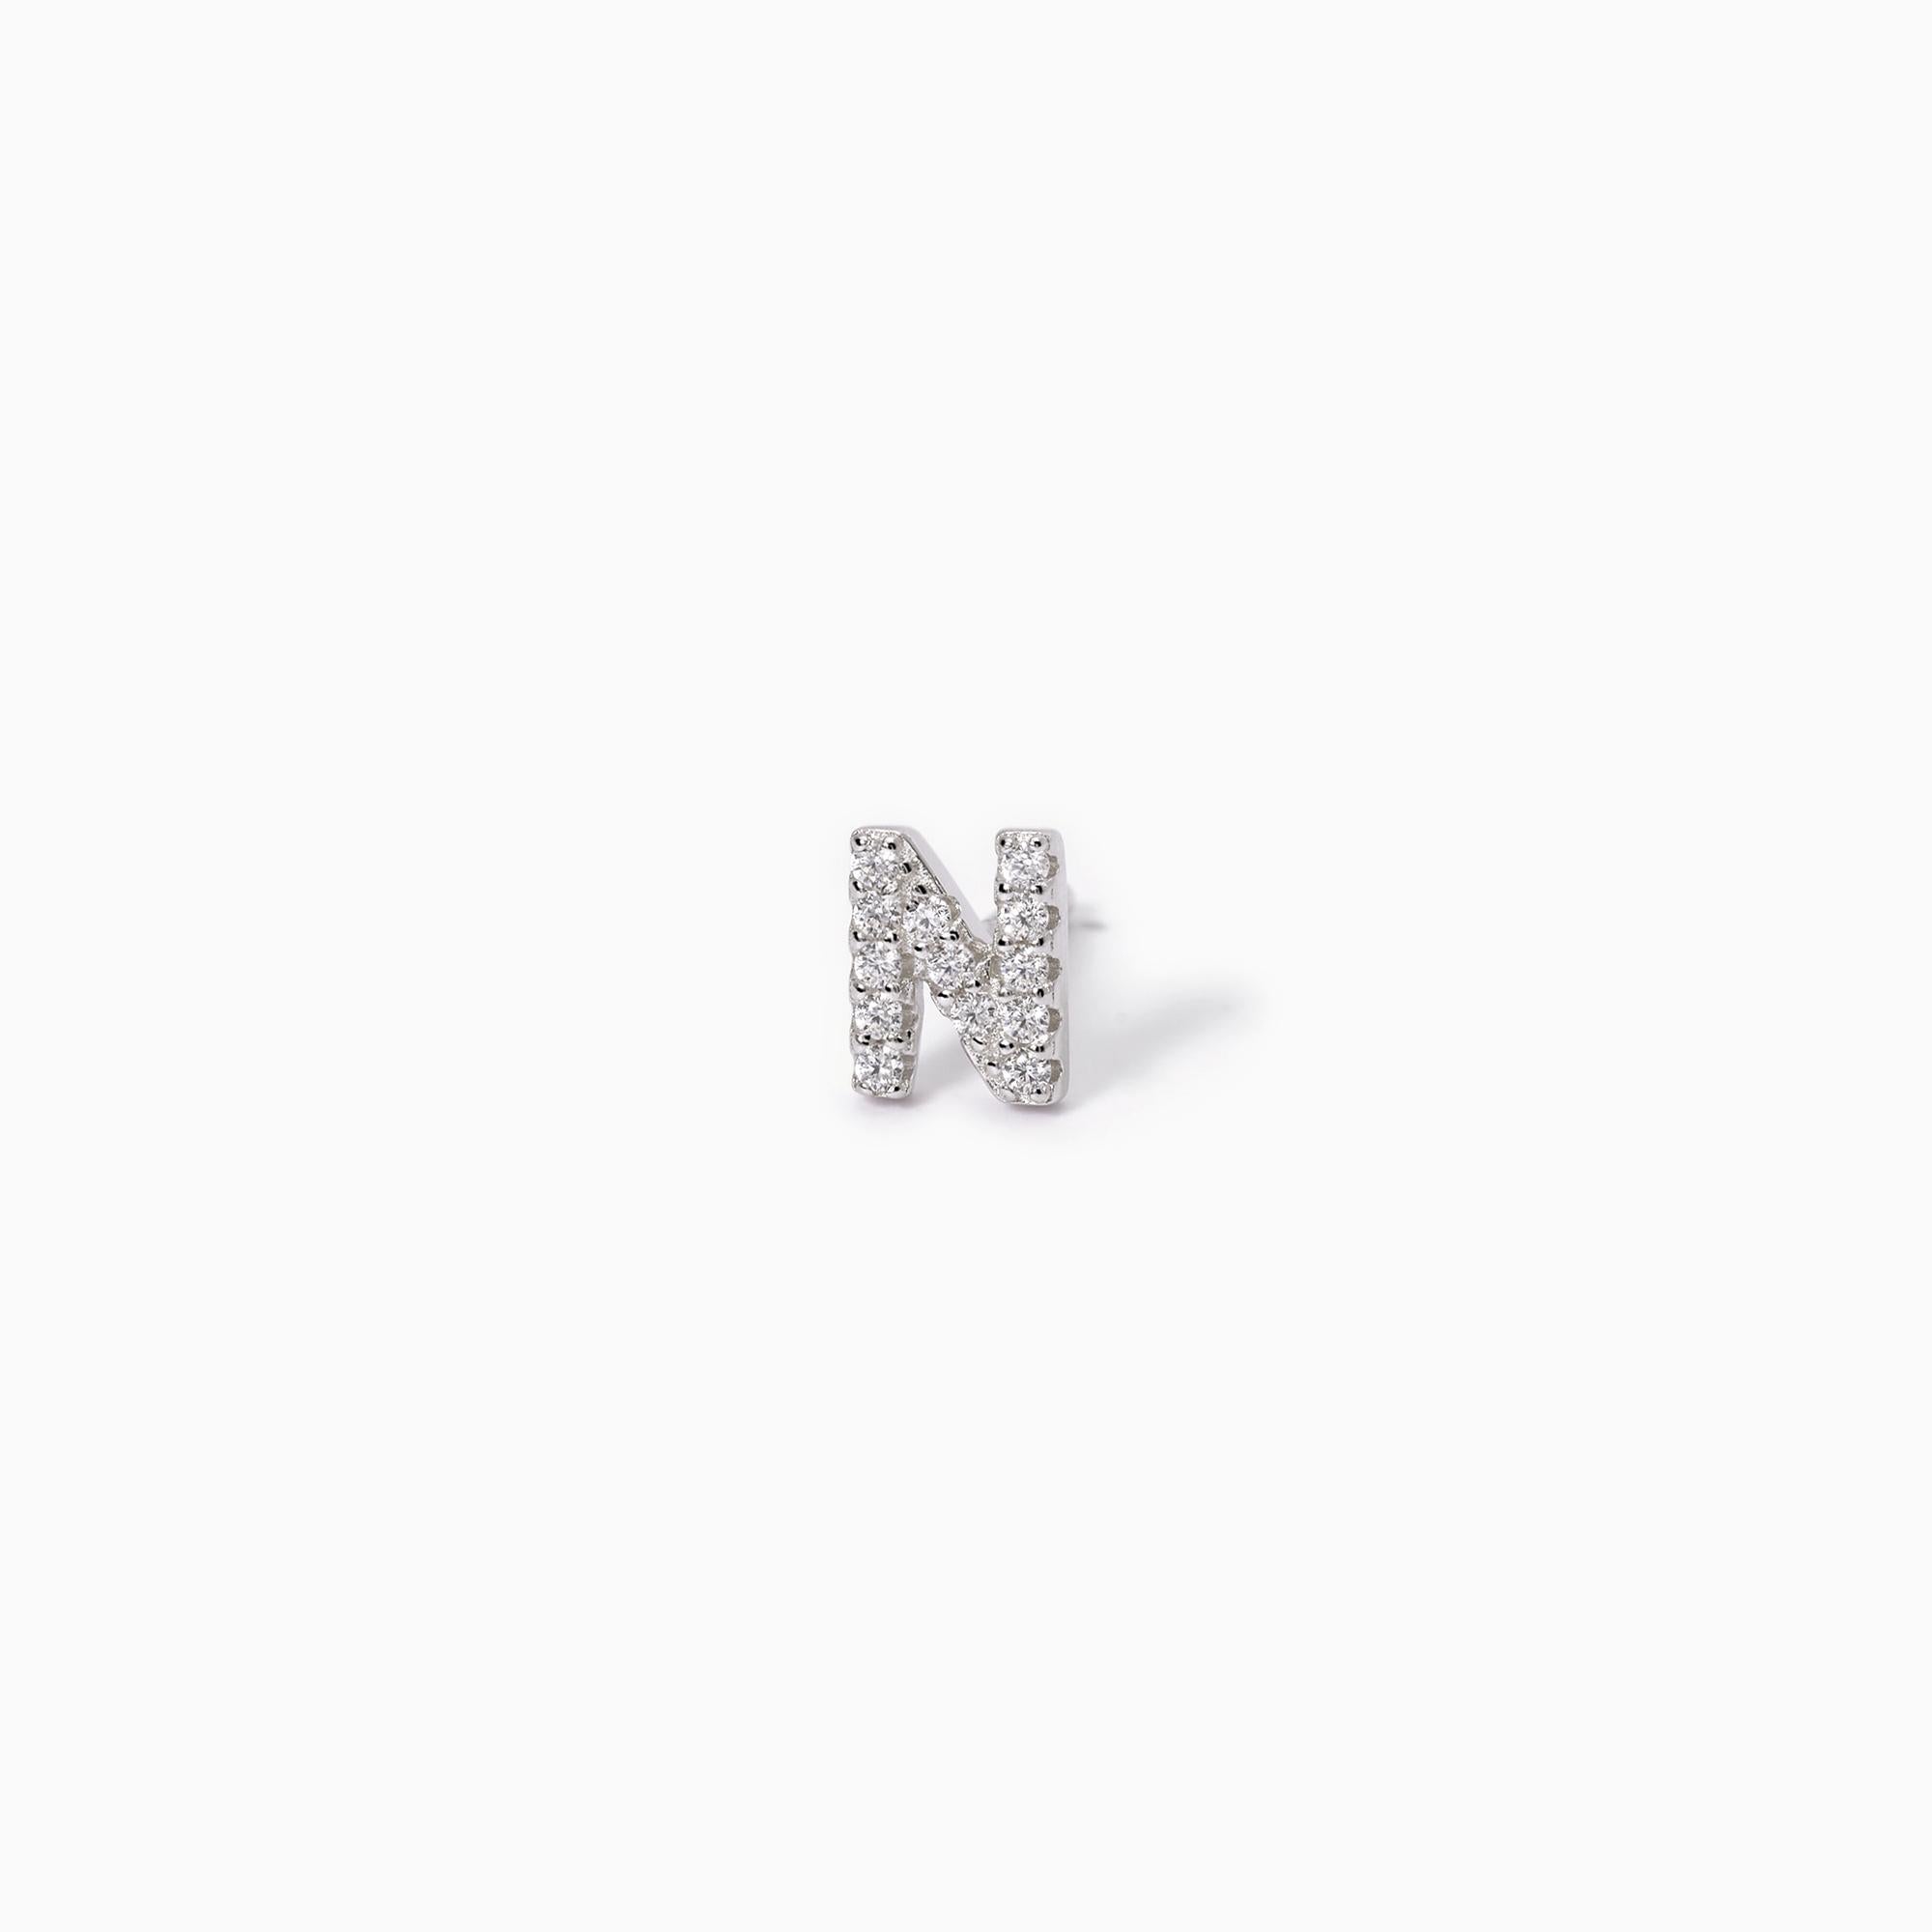 Mabina Donna - Monorecchino iniziale argento con zirconi N - 563569N